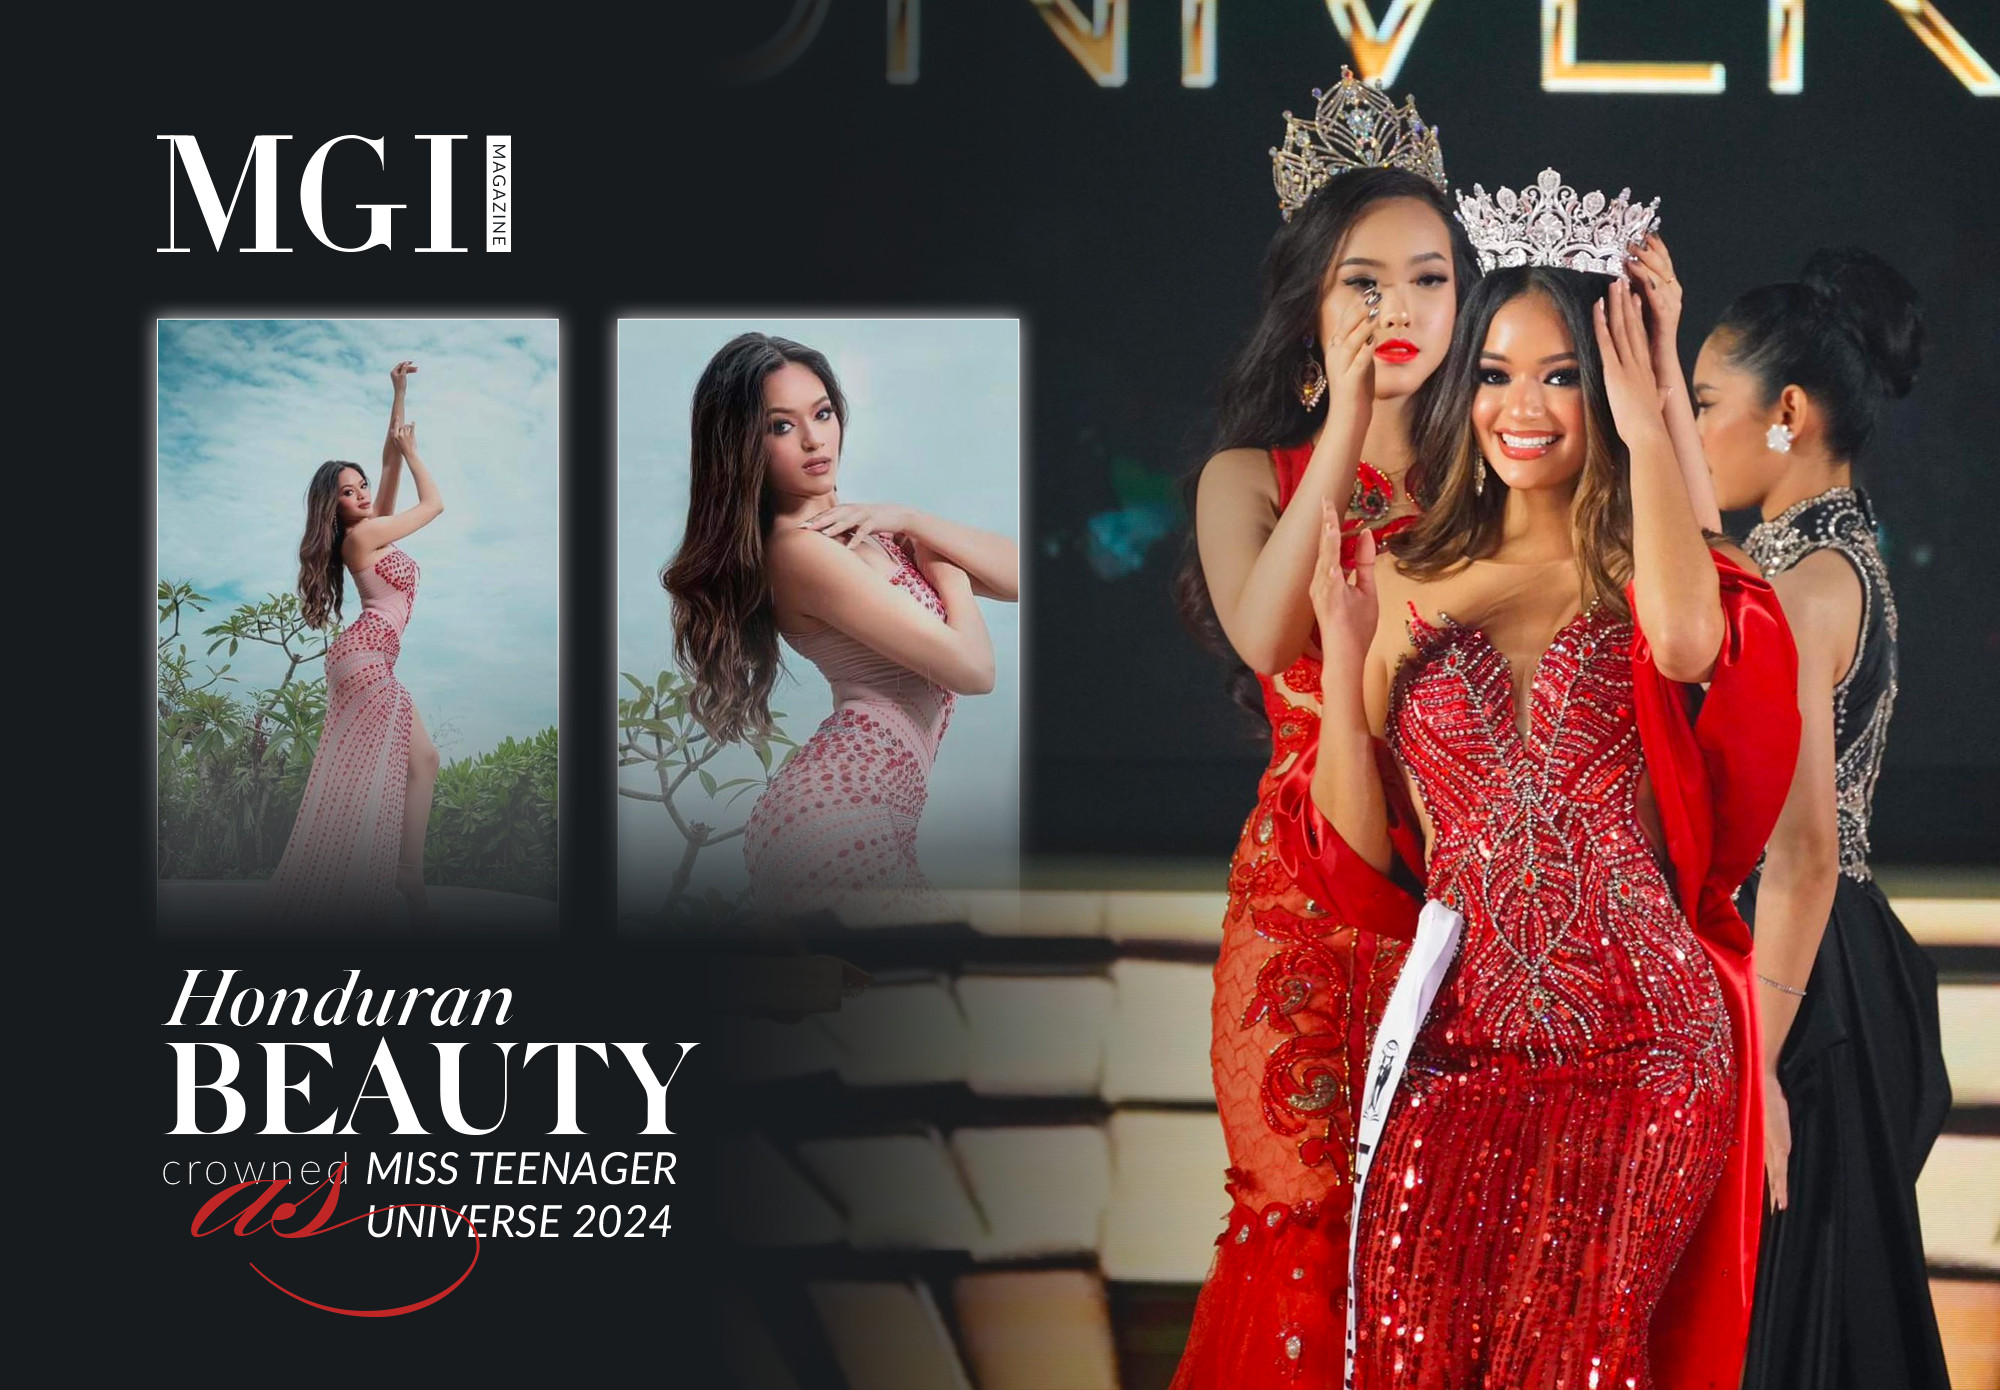 Honduran beauty crowned as Miss Teenager Universe 2024